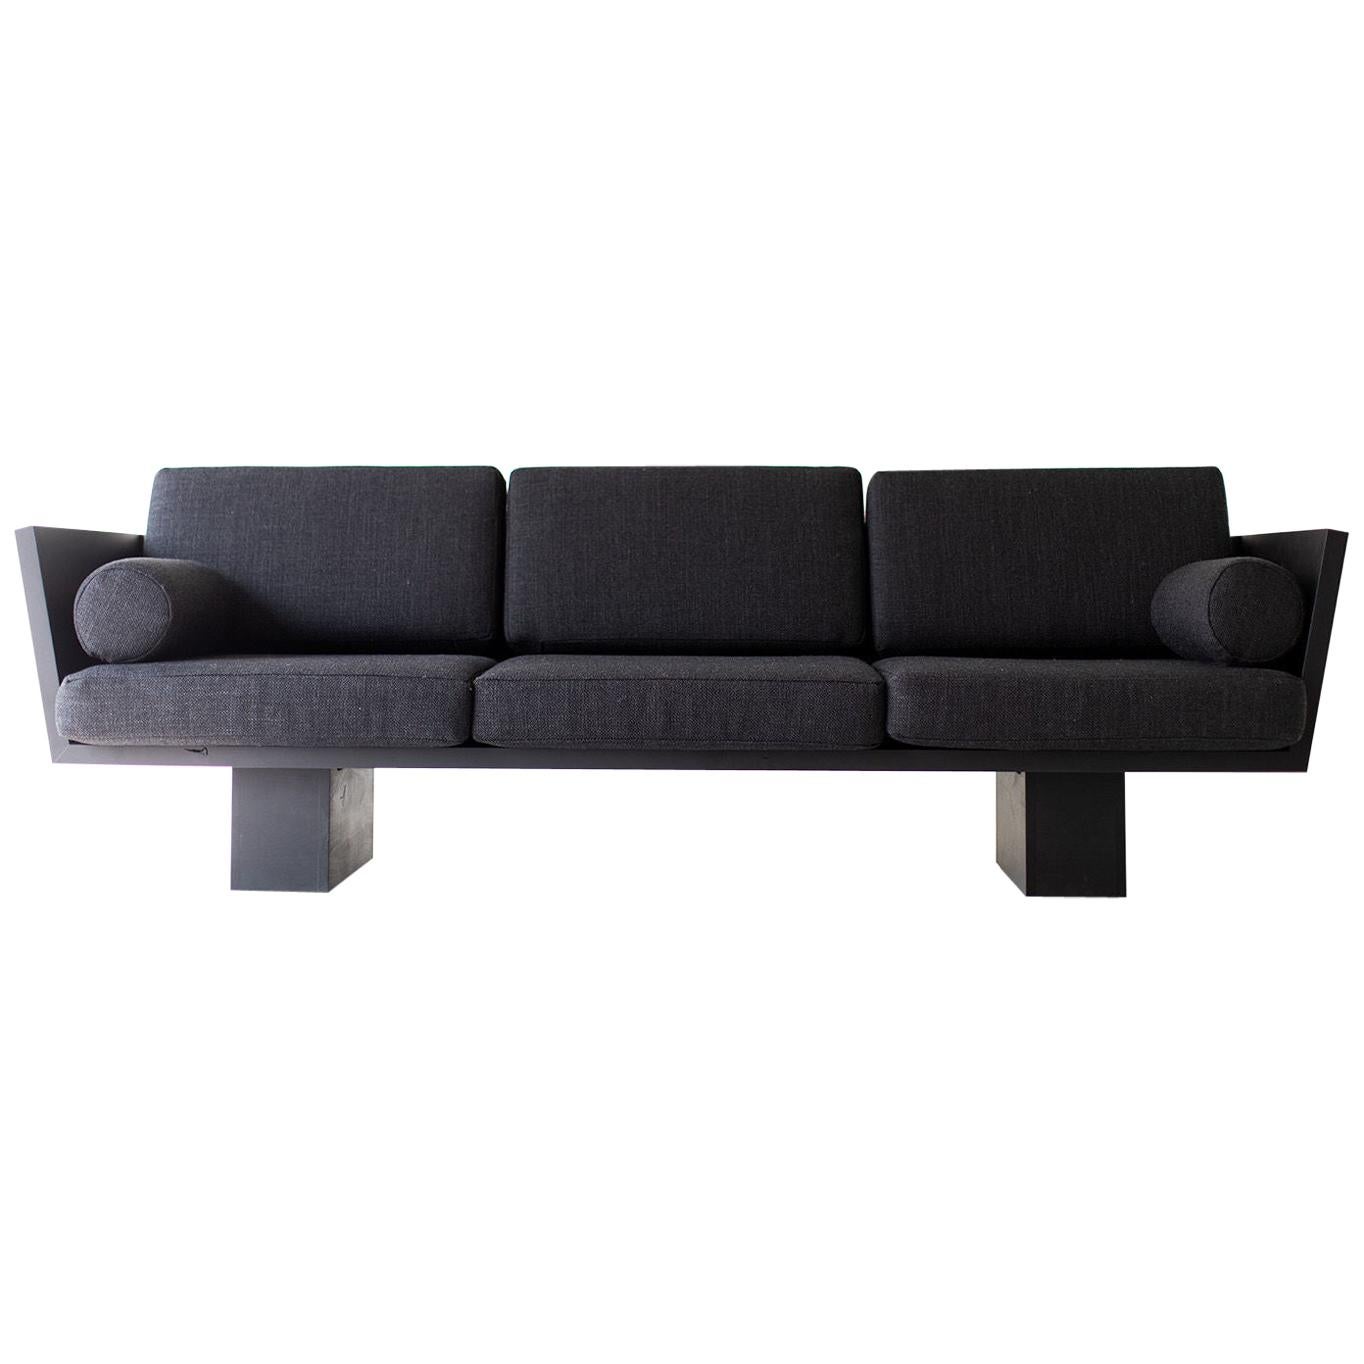 Suelo Modern Outdoor Sofa